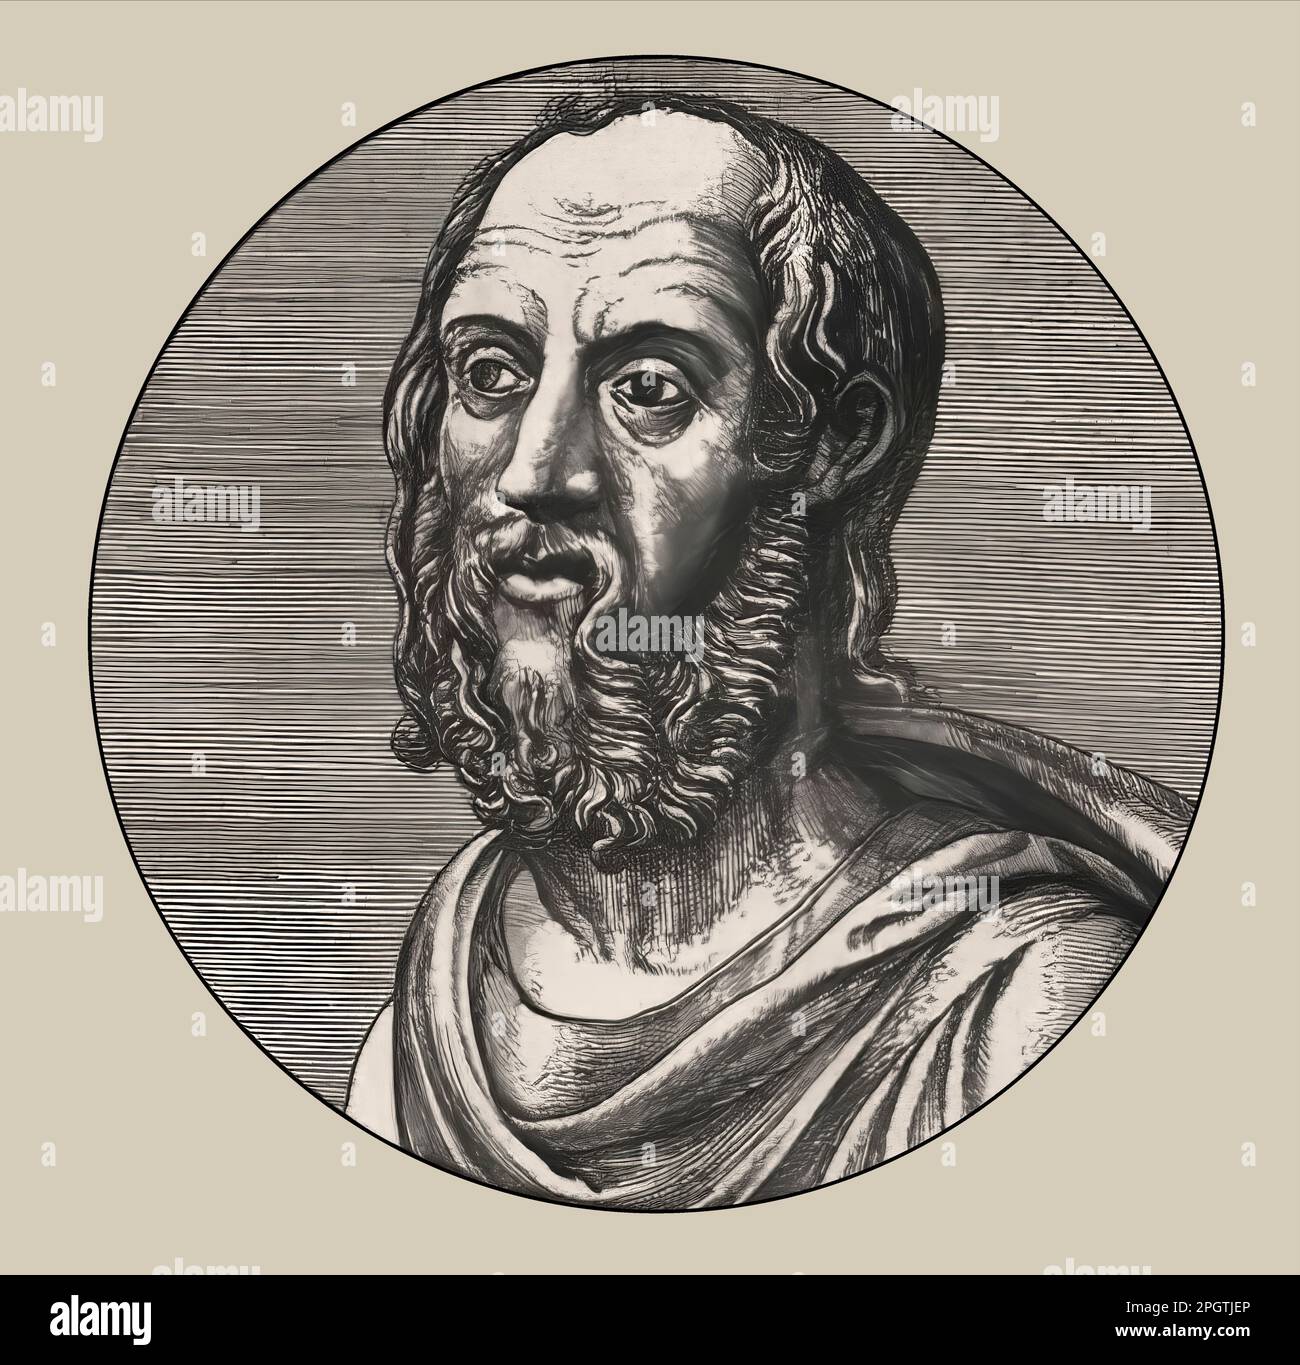 Gaius Plinius Secundus, d.C. 23/24 – 79, chiamato Plinio il Vecchio, autore romano, modificato digitalmente Foto Stock